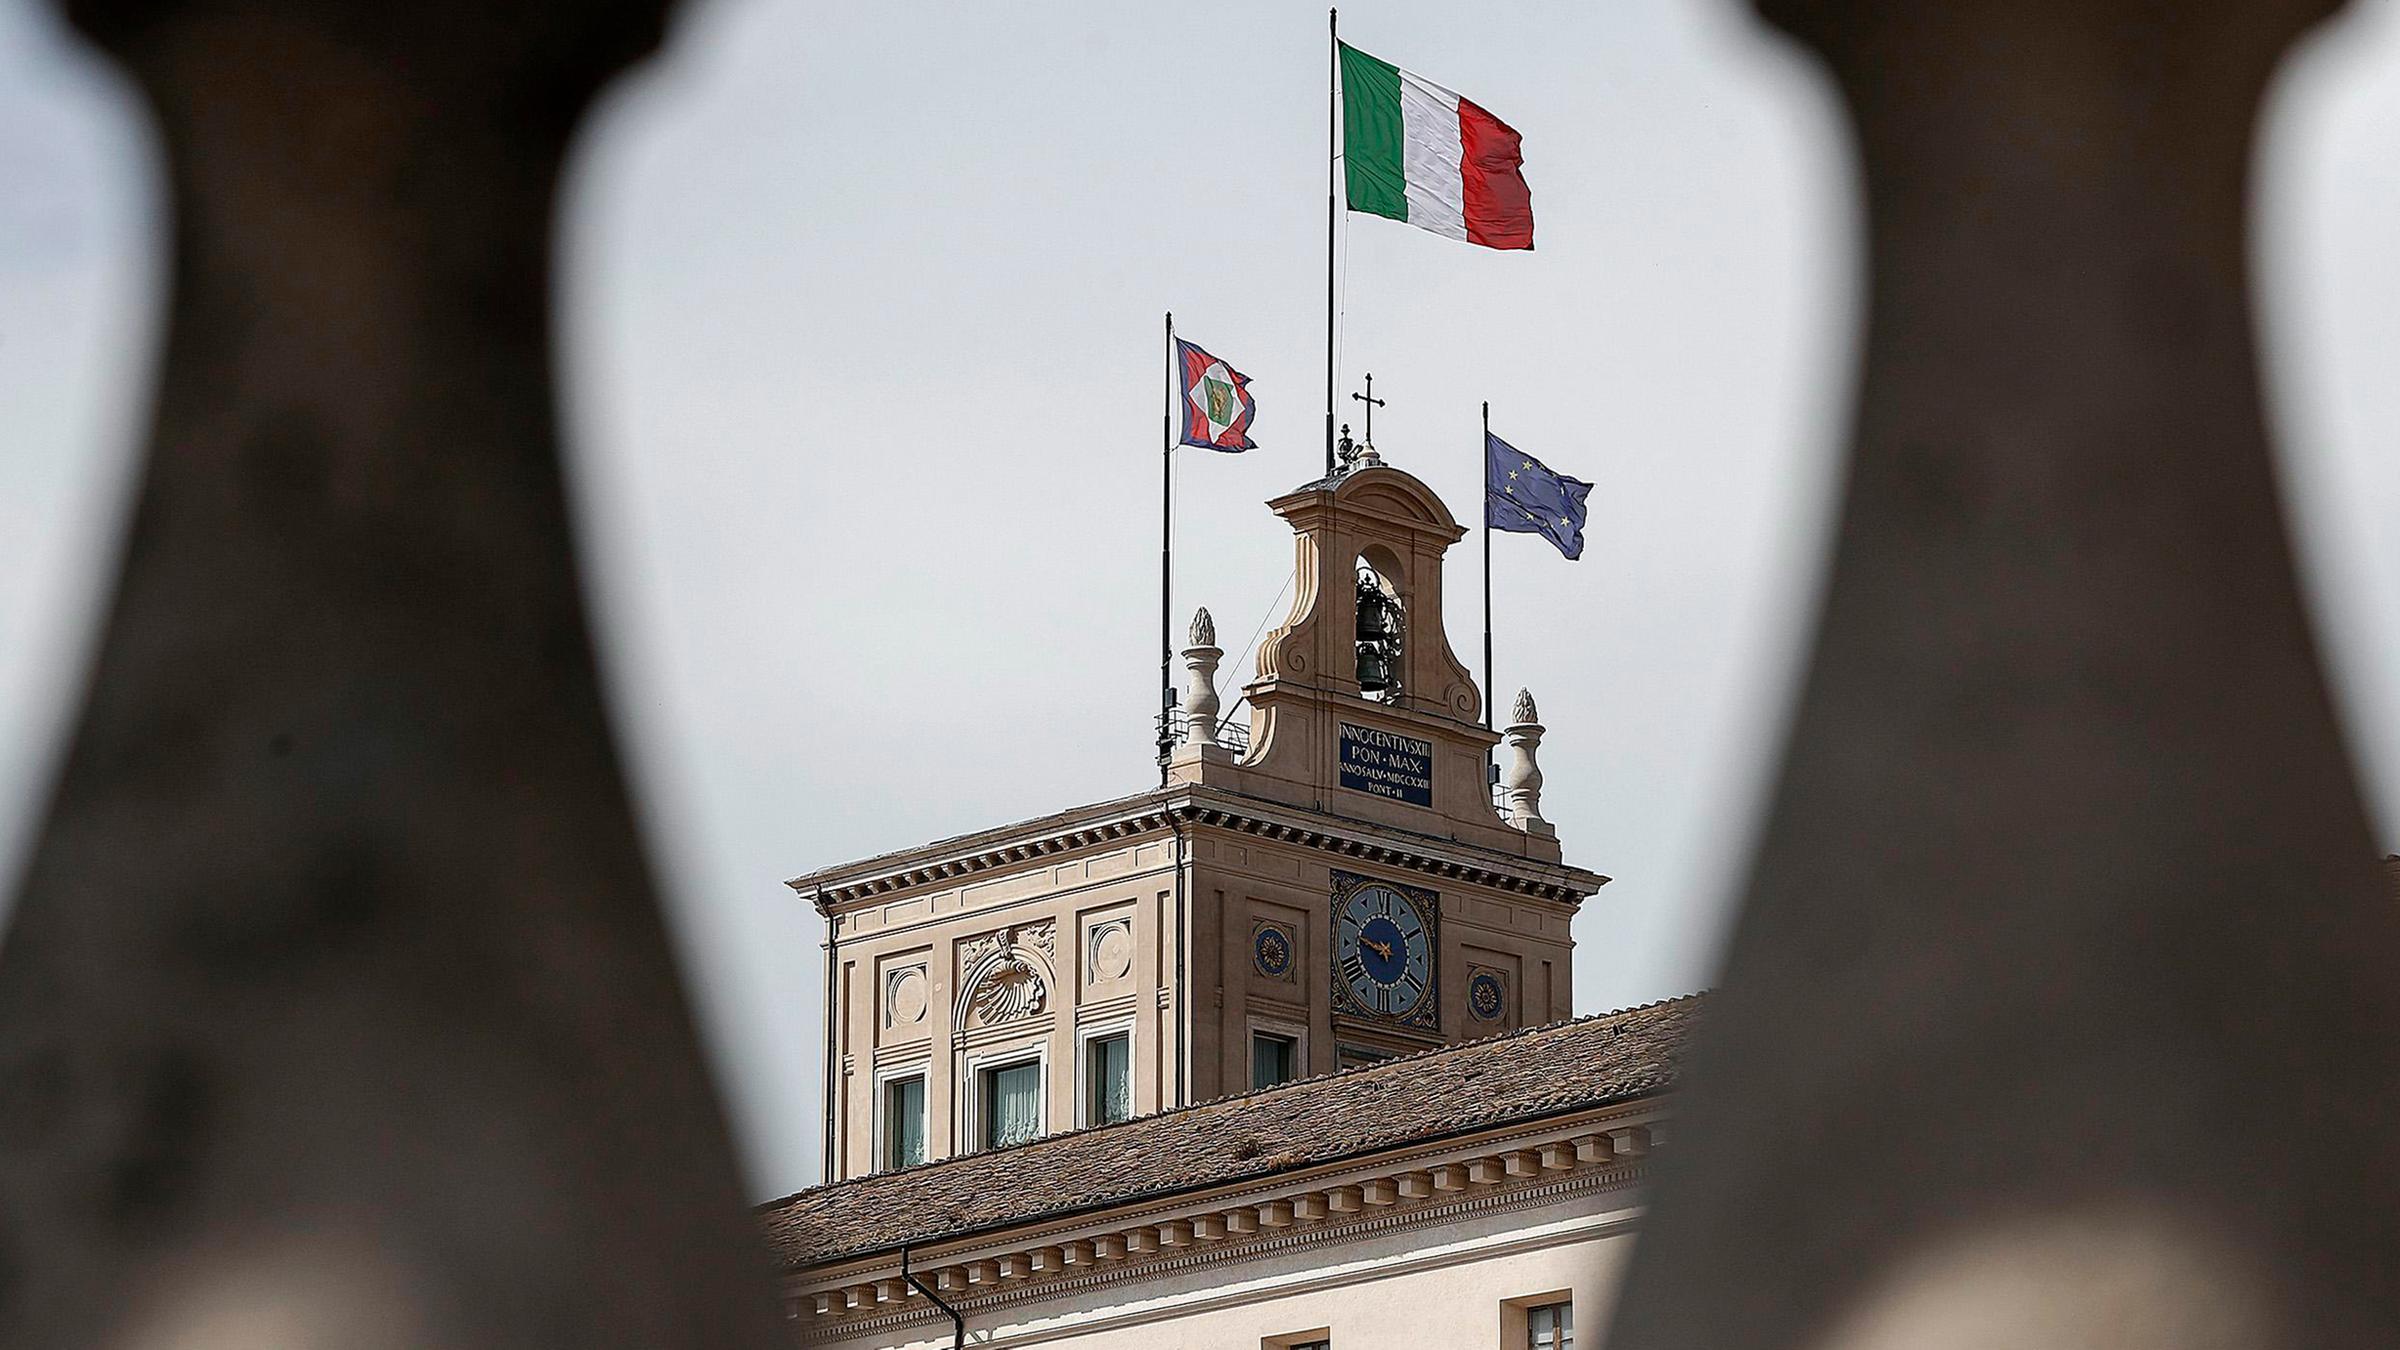 Retter Draghi: Italiens Parteien ohne Kompass